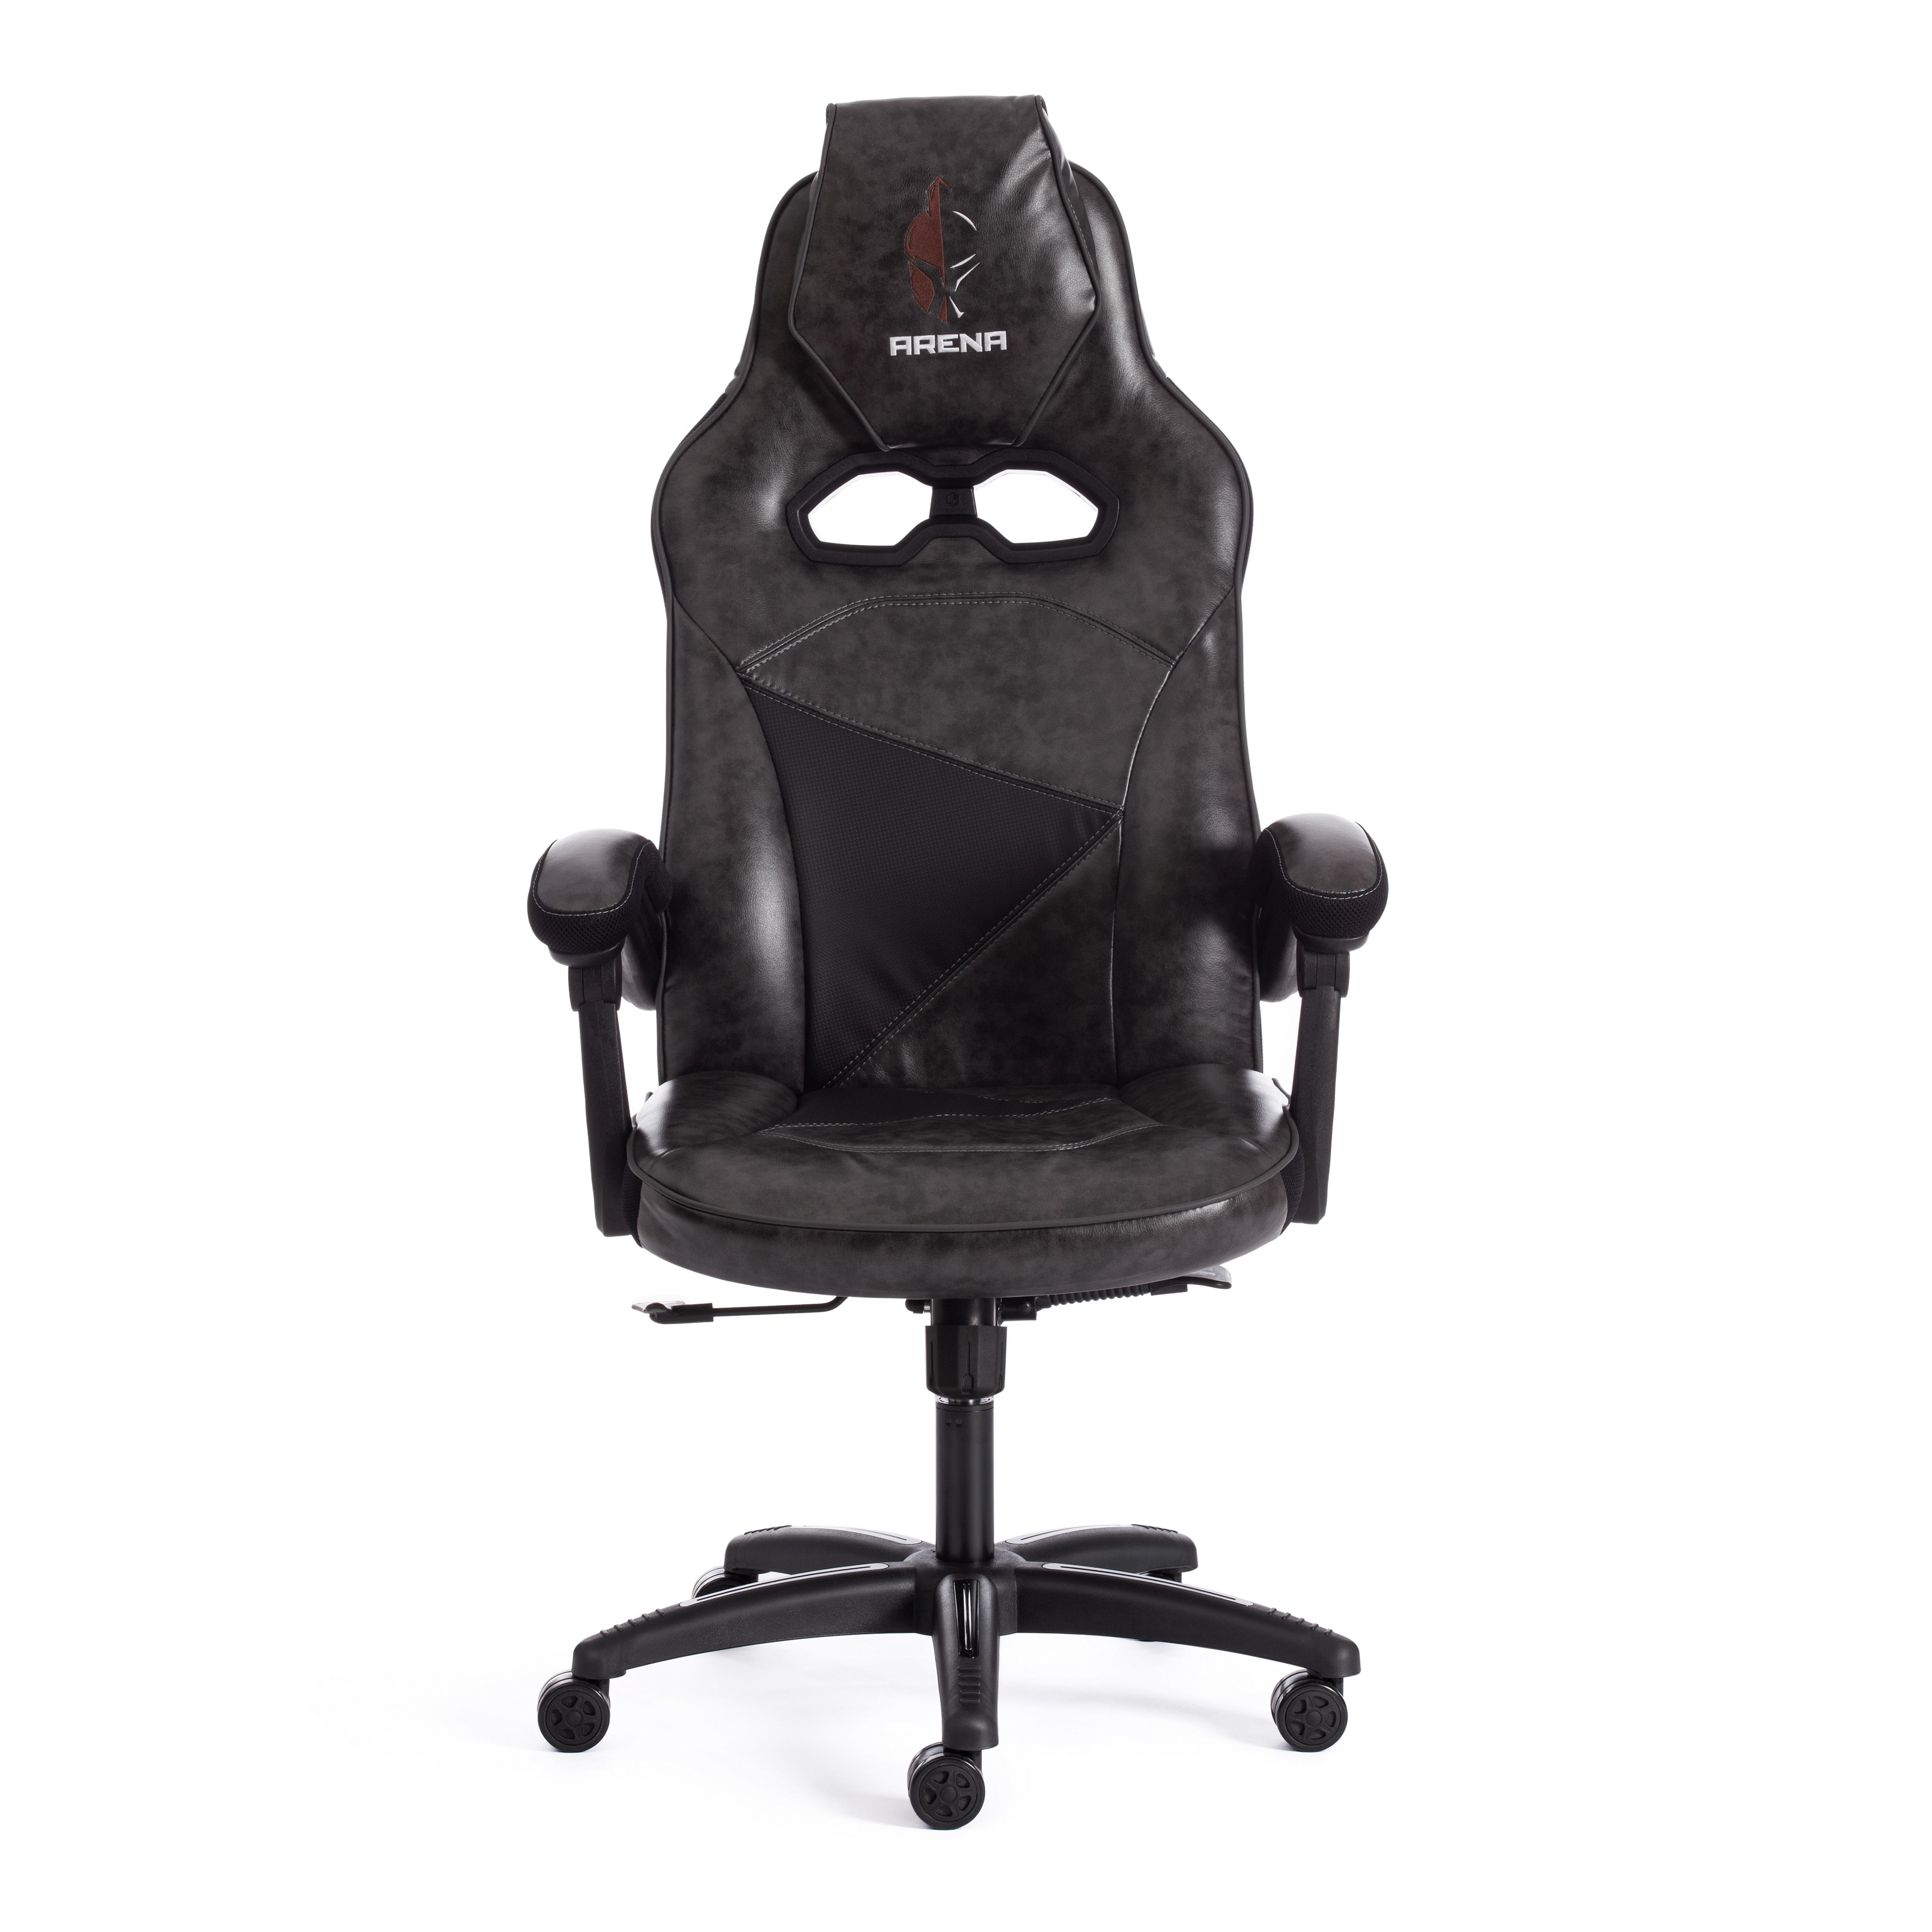 Кресло ARENA кож/зам, серый/черный, 2 tone серый/карбон черный